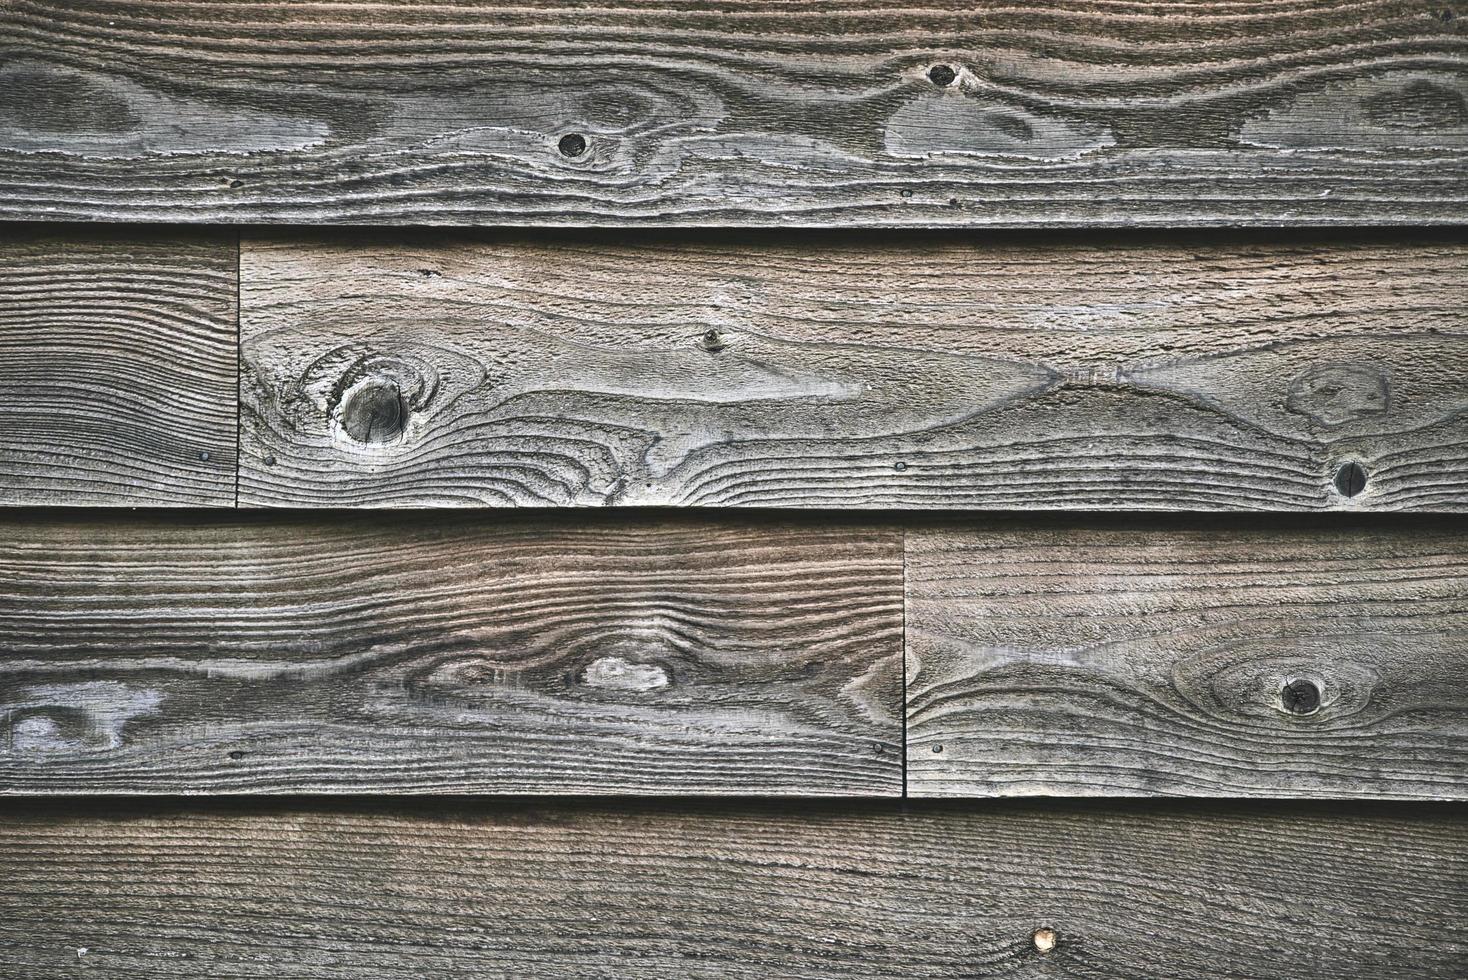 superfície de madeira marrom e cinza foto